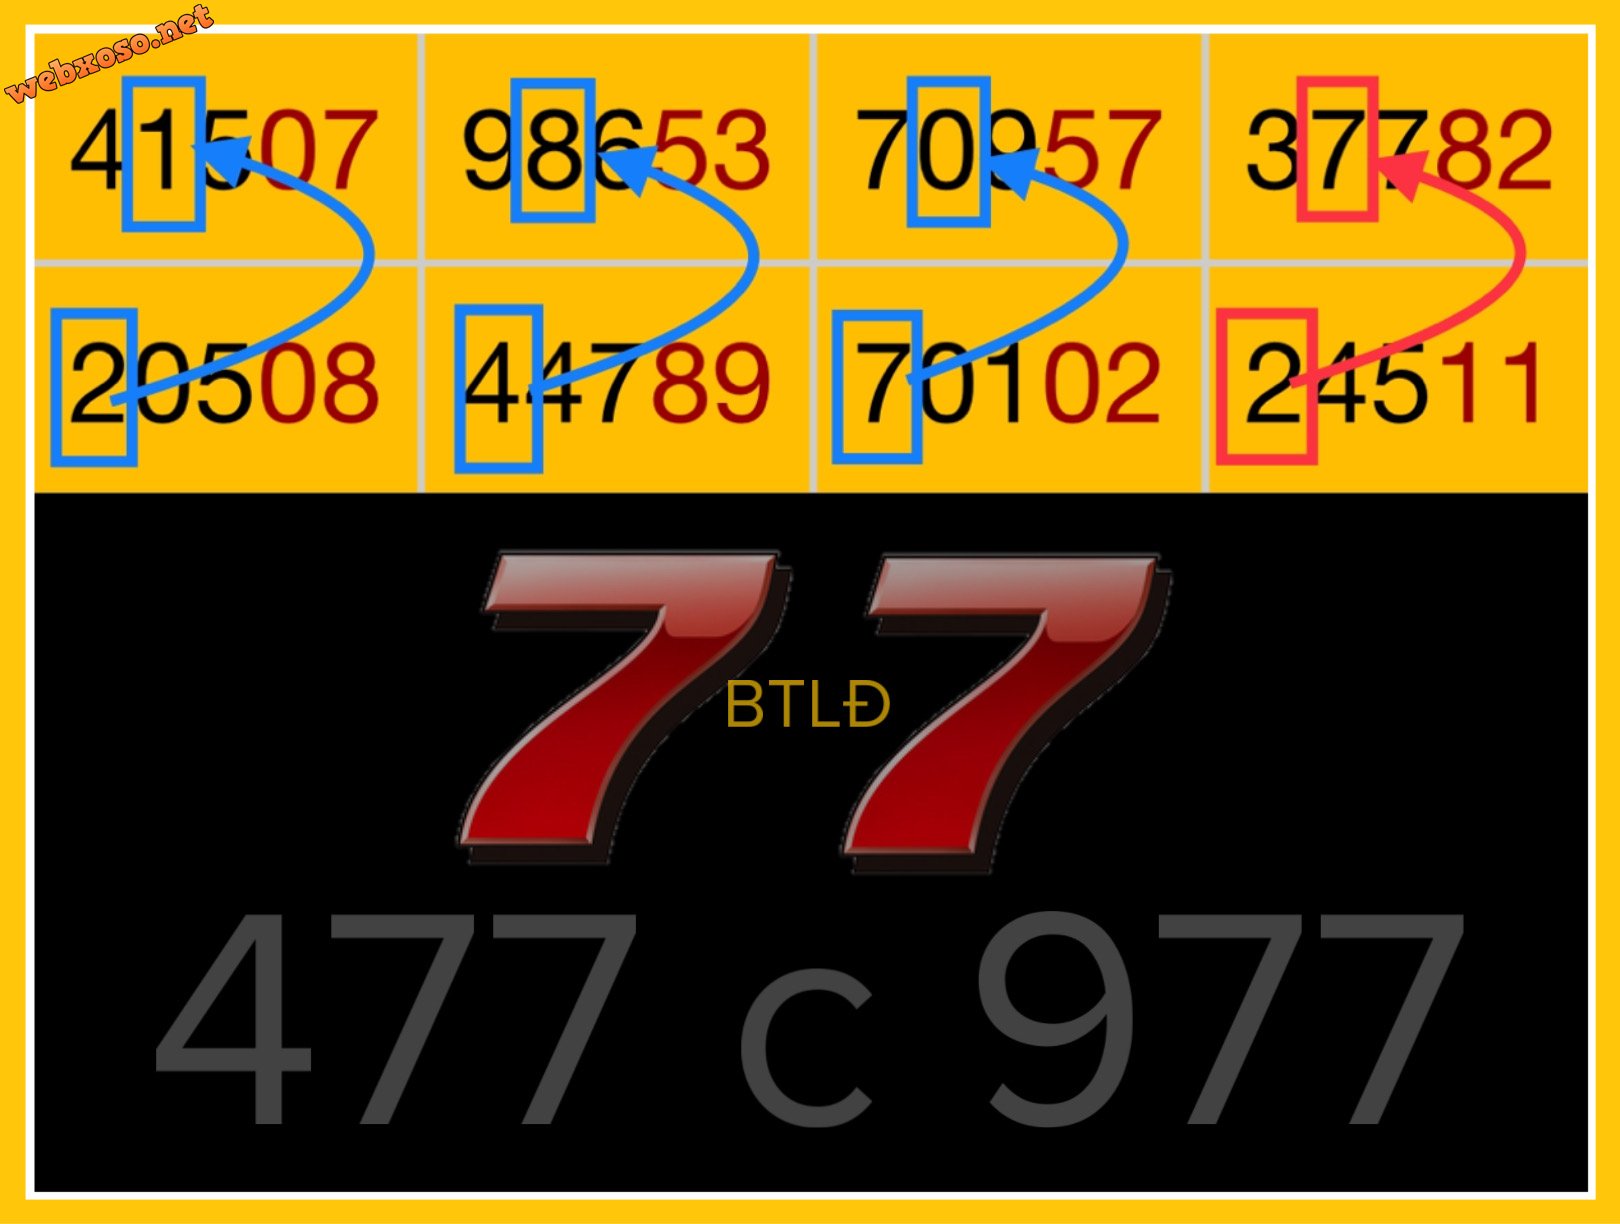 15529924-C9F0-48D4-A7D0-D8D396648194.jpeg